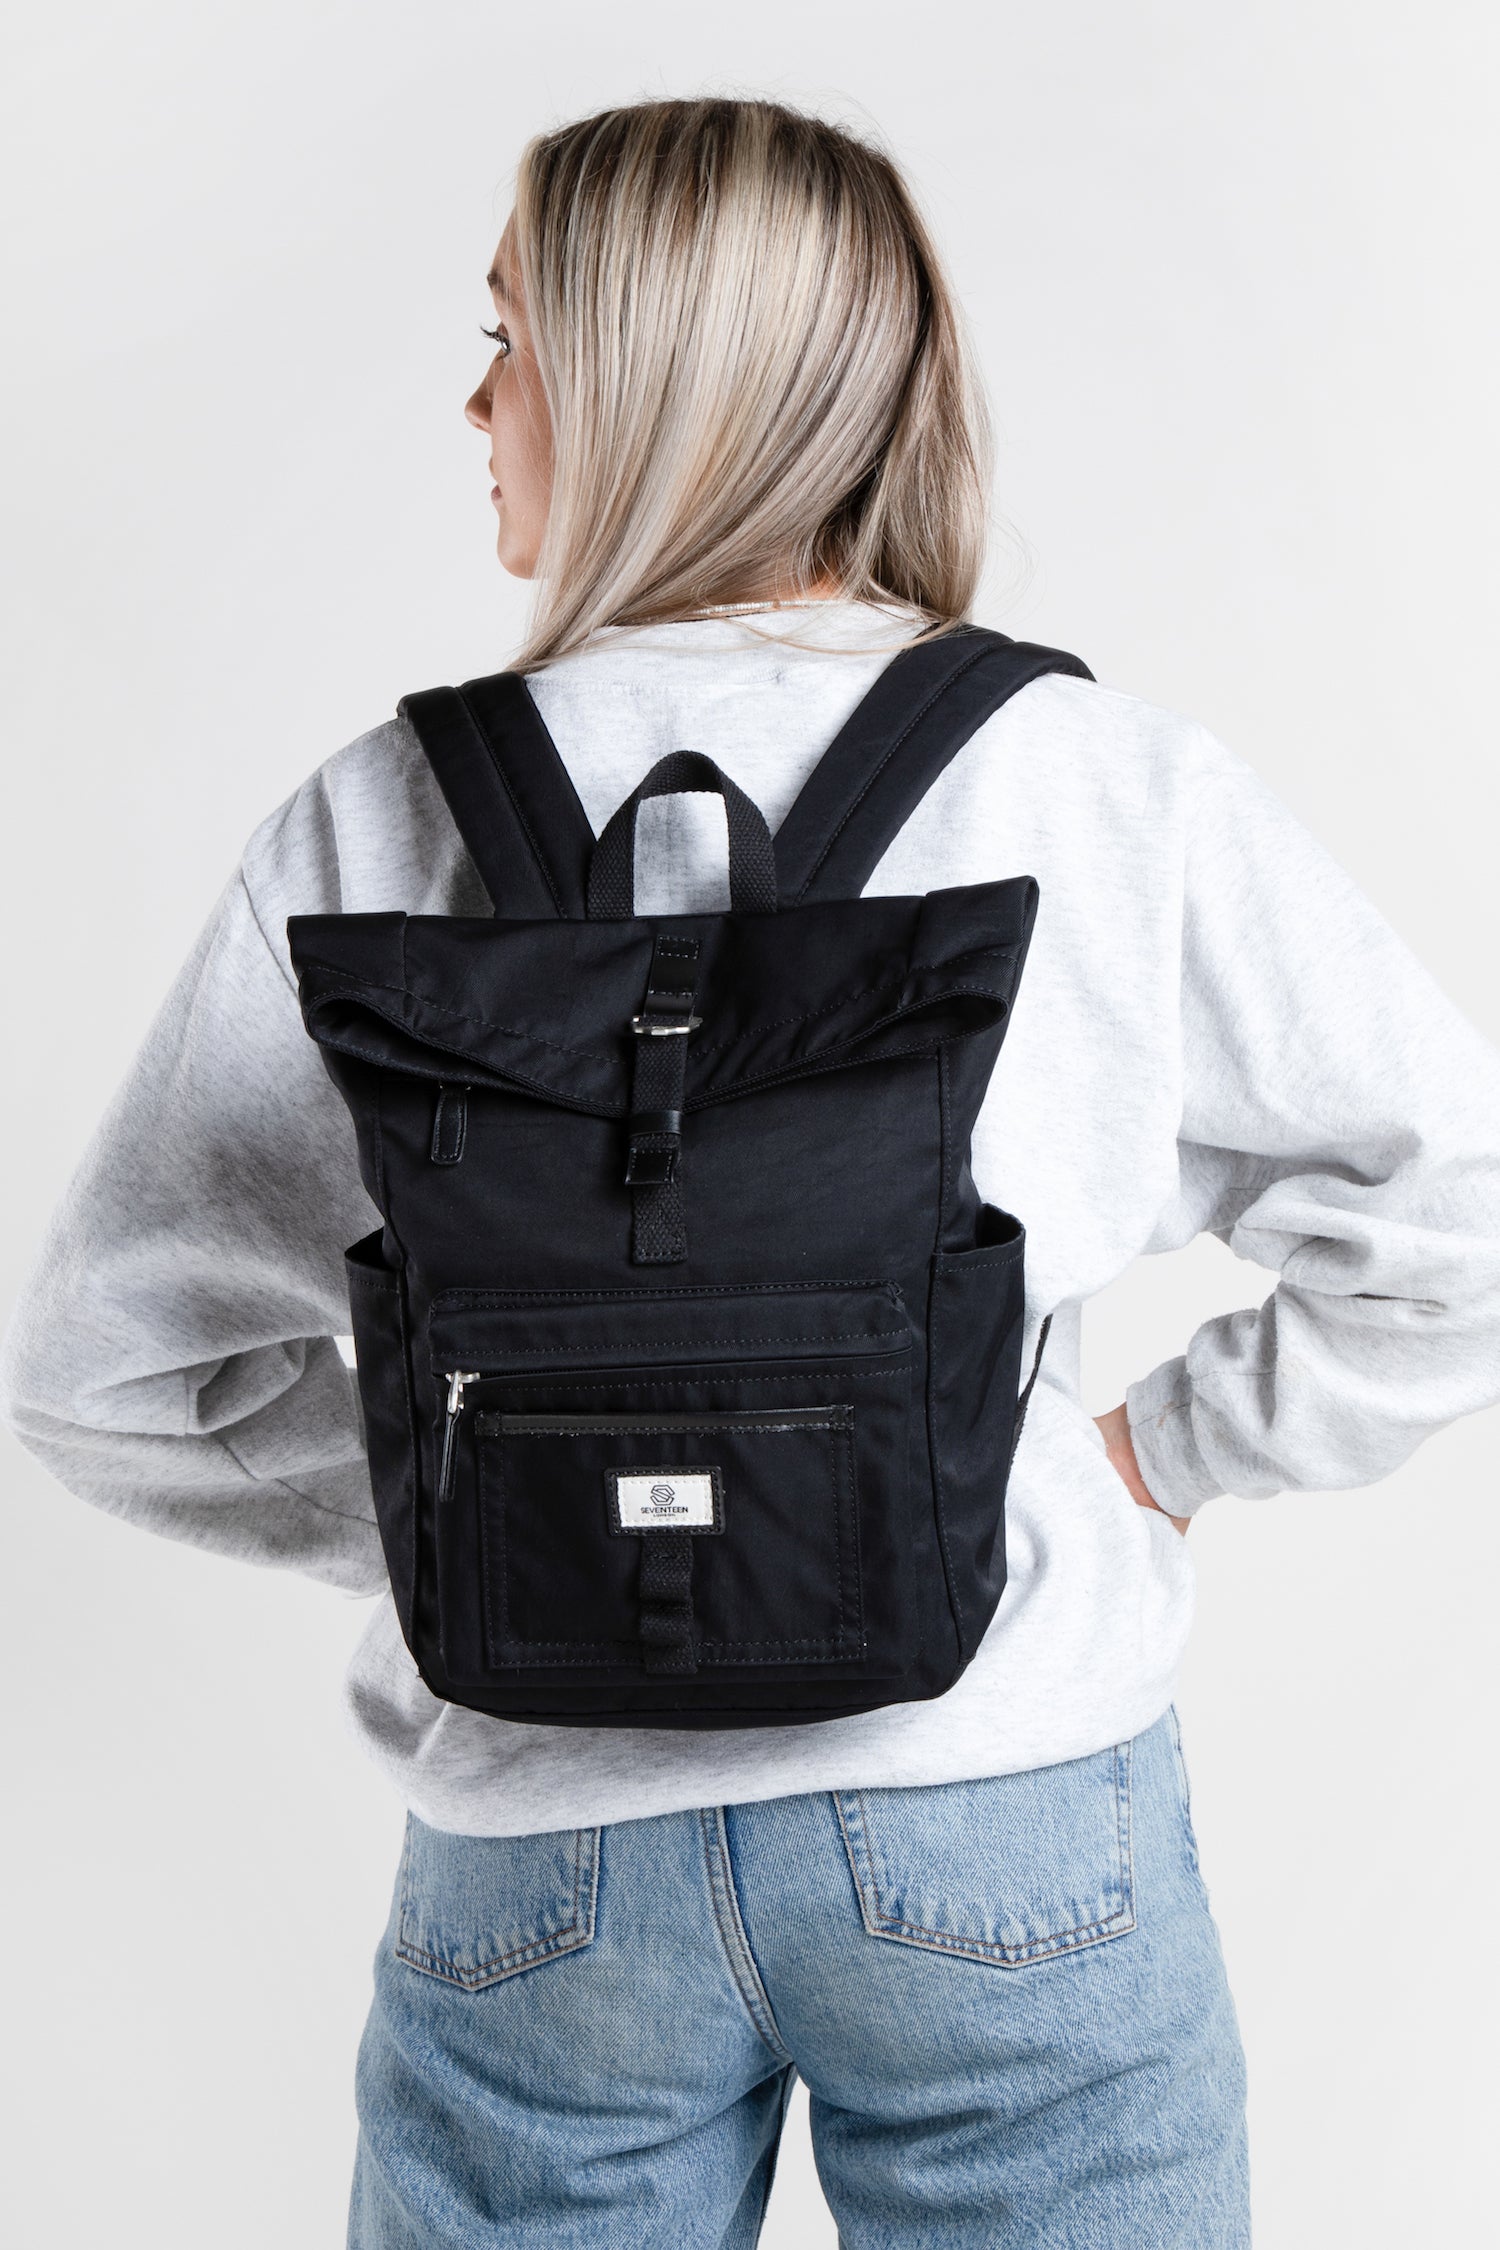 Canary Wharf Mini Backpack - Black with Black